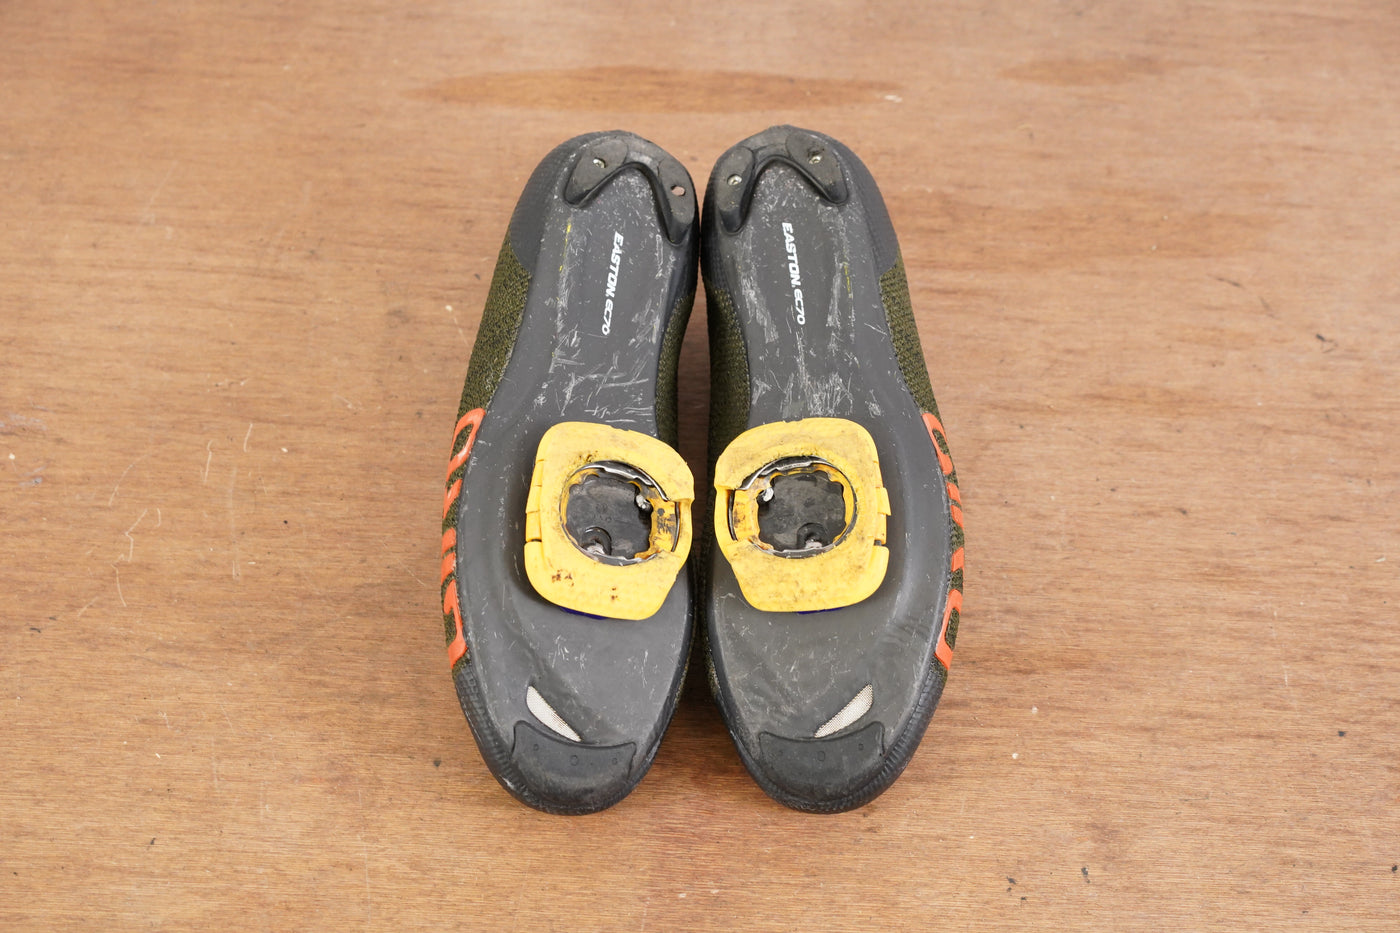 Size 47 (EU) Giro Empire E70 Knit Road Cycling Shoe 3-Bolt